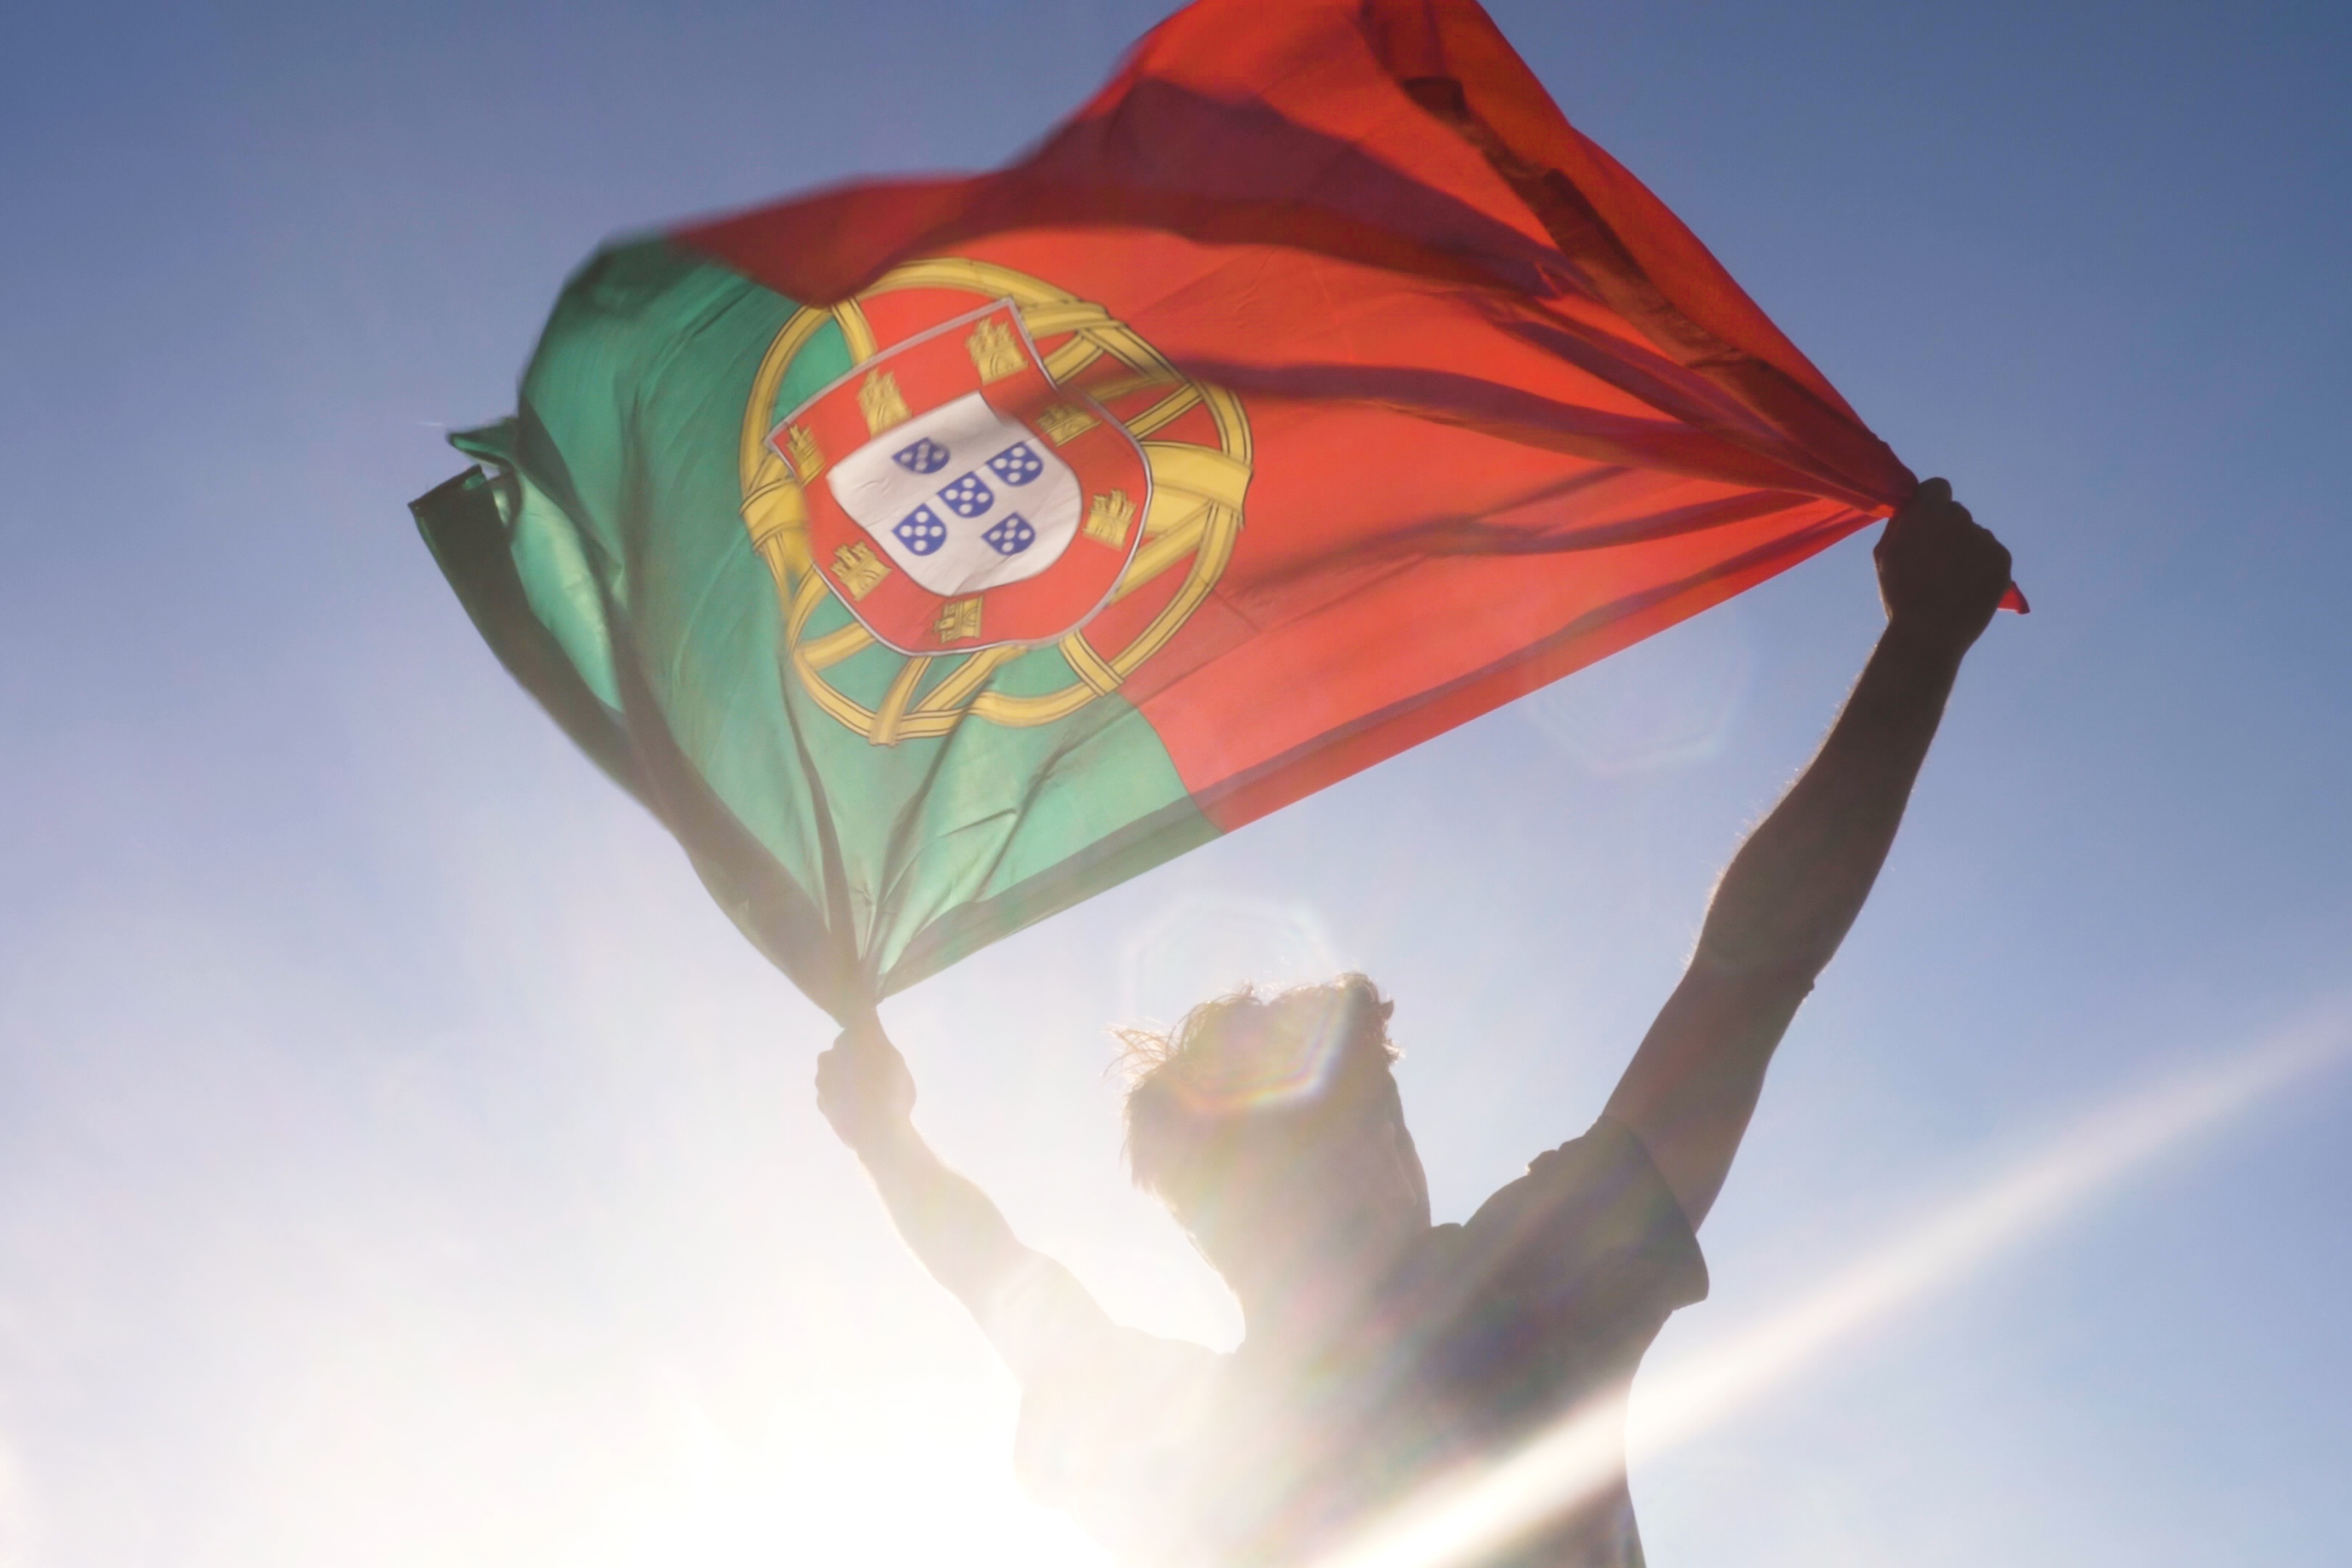 Португальский флаг развевающийся на ветру, символизирующий гражданство Португалии